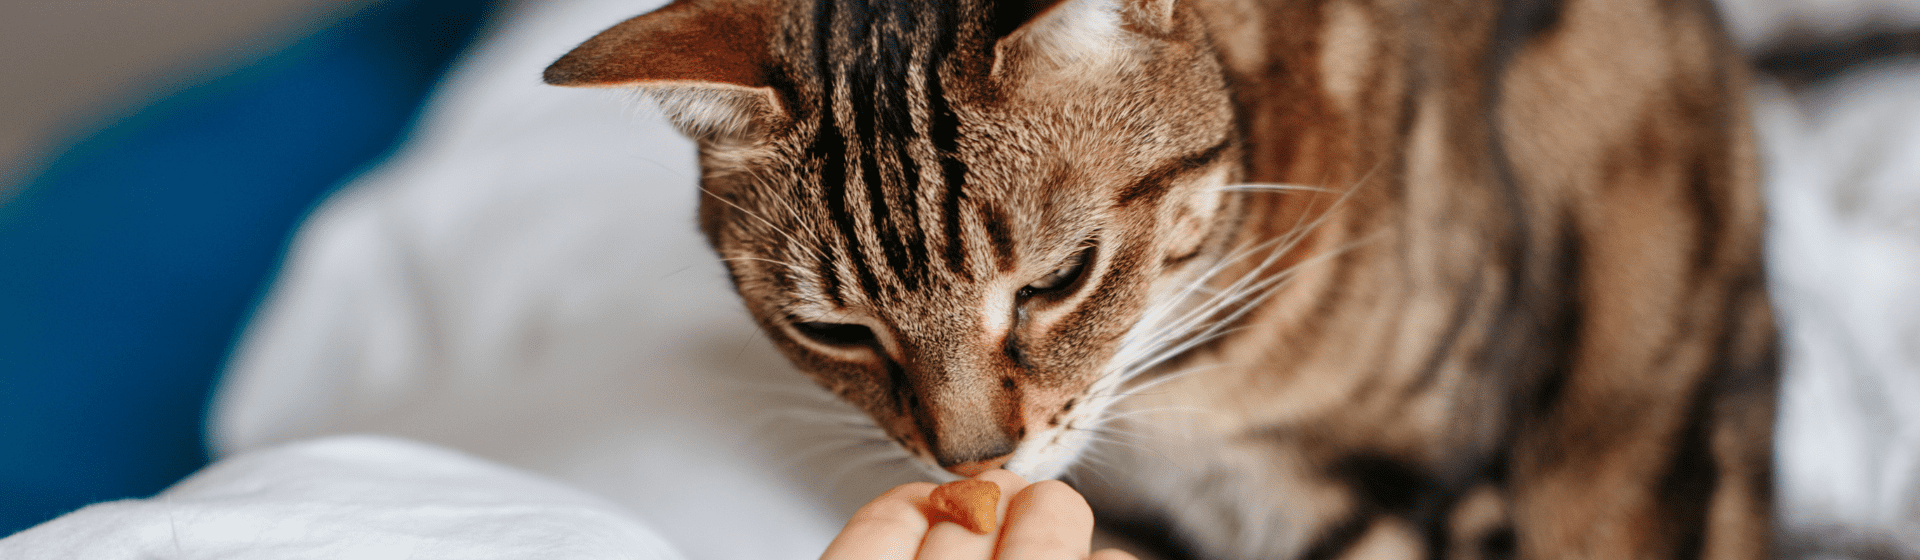 Petiscos para gatos: quais são os melhores snacks?